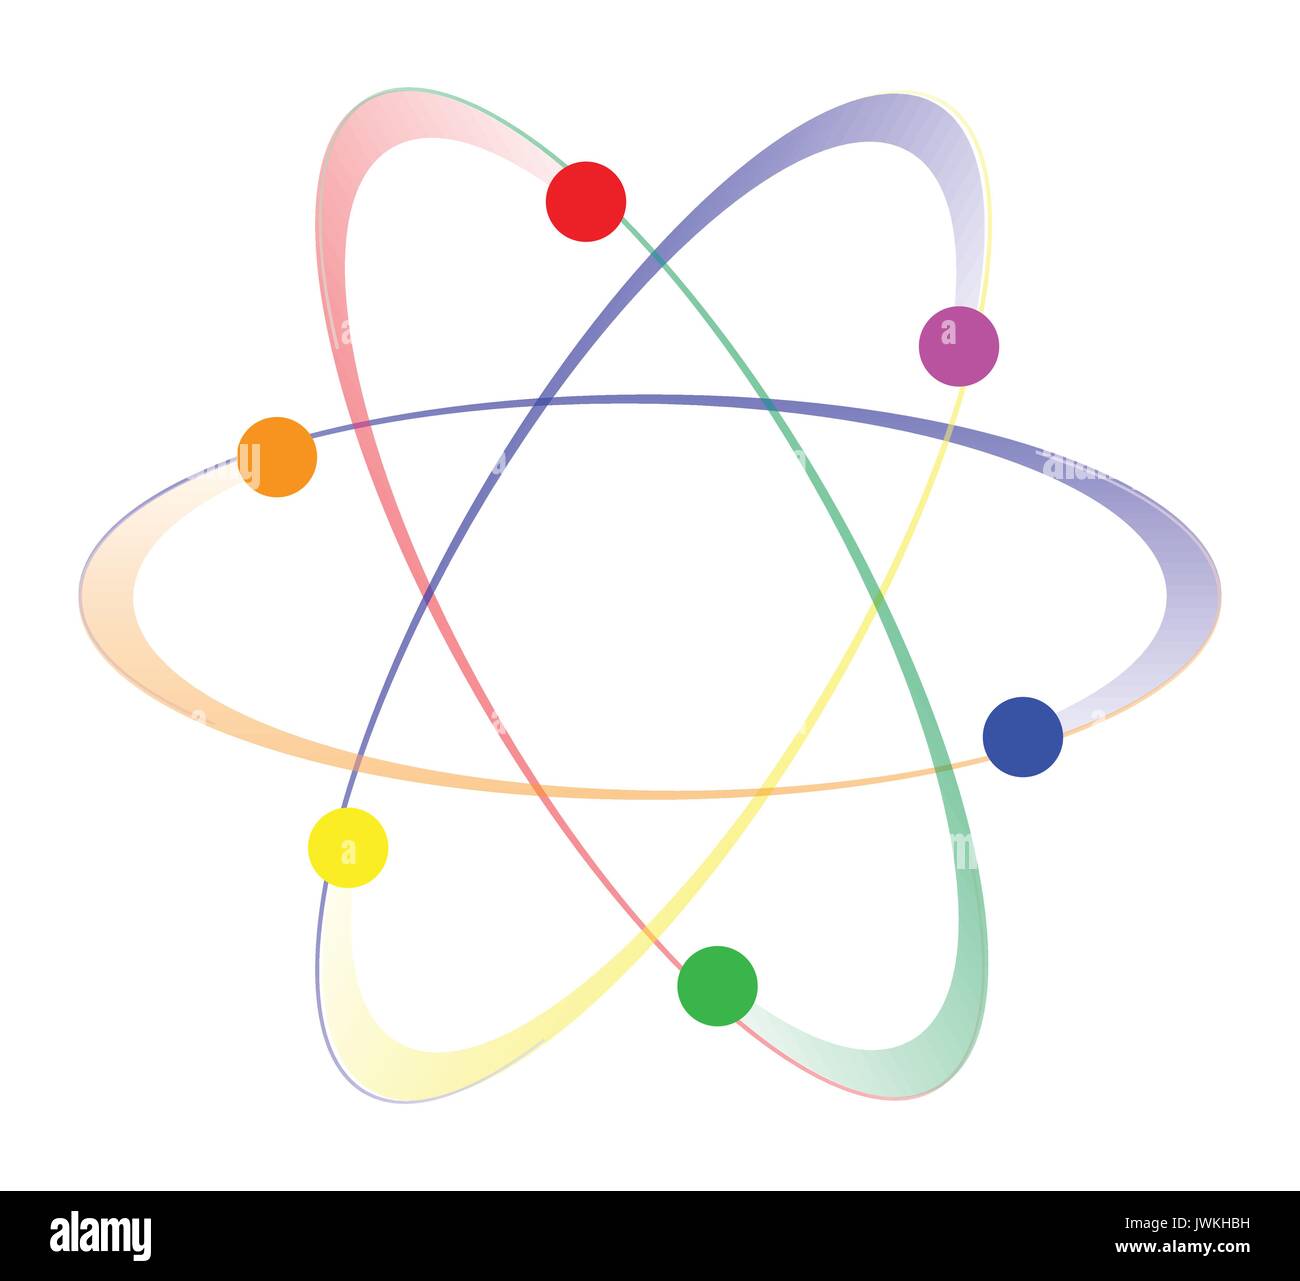 Les atomes dans le tourbillon de couleurs LGBT sur un fond blanc Illustration de Vecteur